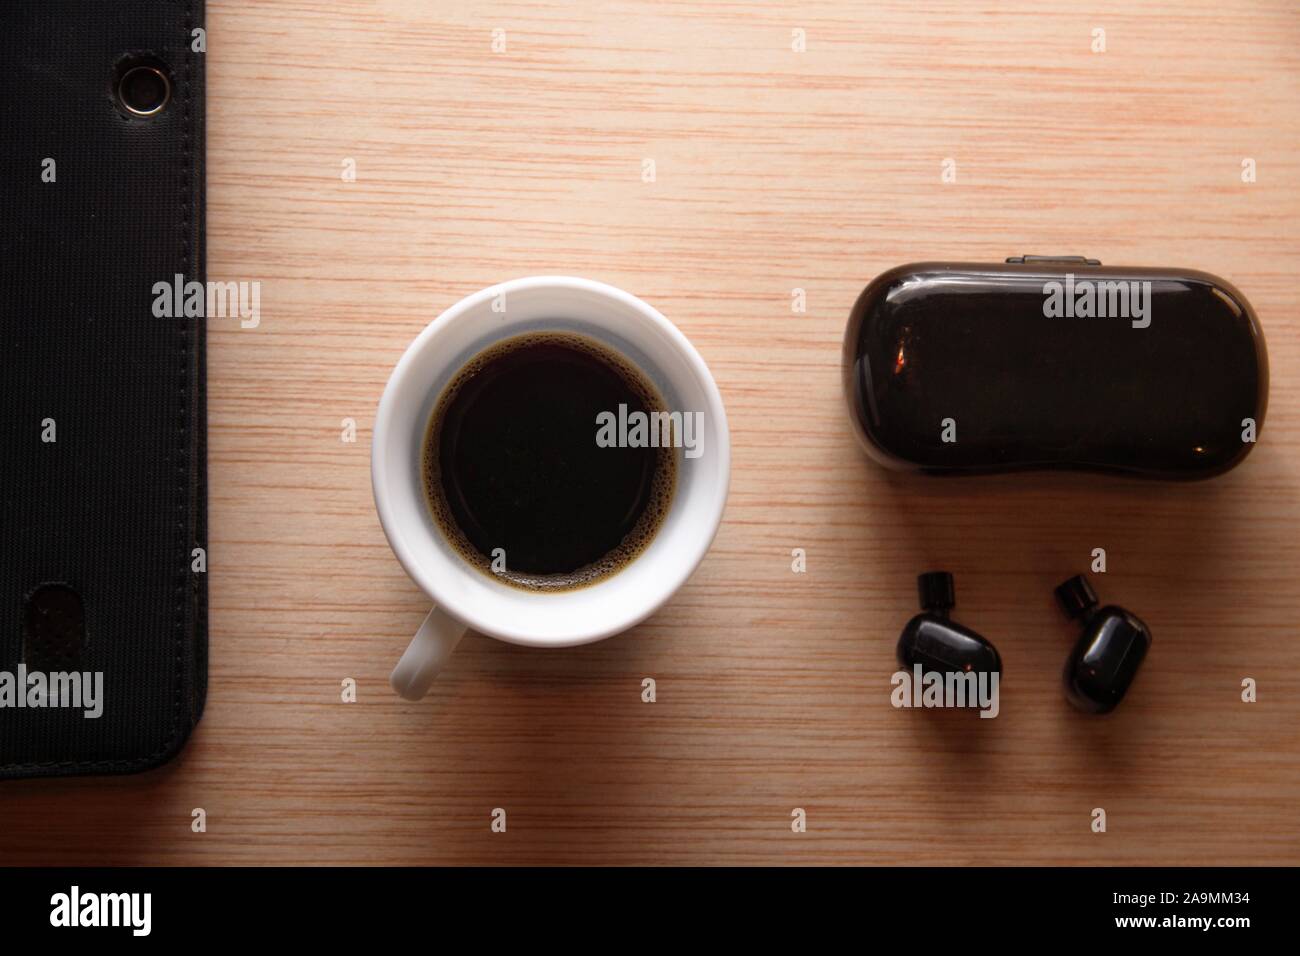 Gli auricolari Bluetooth accanto ad un mobile e una tazza di caffè su una scrivania in legno. Disposizione piatta con copia vuota dello spazio. Foto Stock